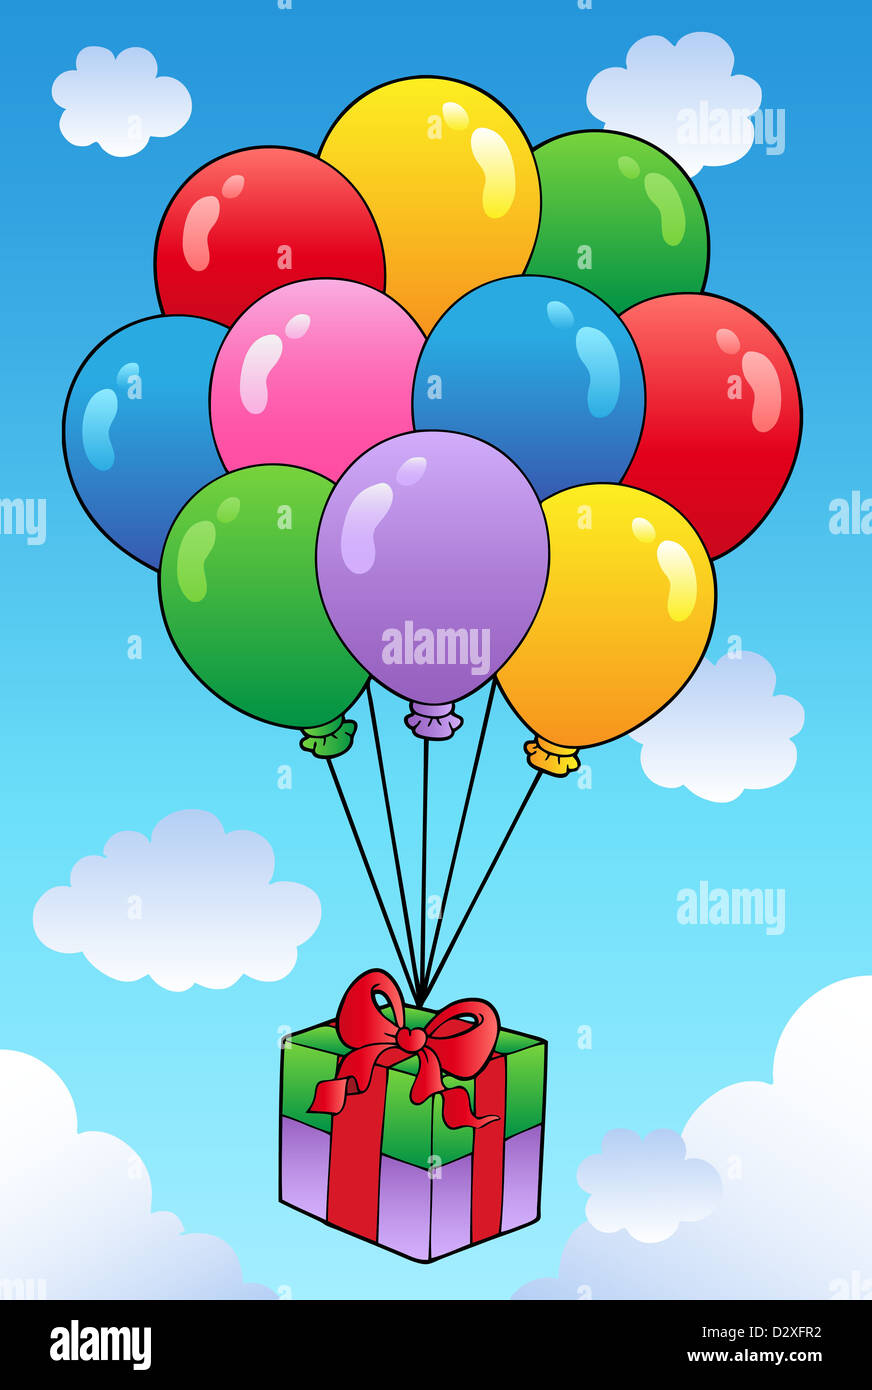 Don flotante con globos de dibujos animados - ilustración en color  Fotografía de stock - Alamy